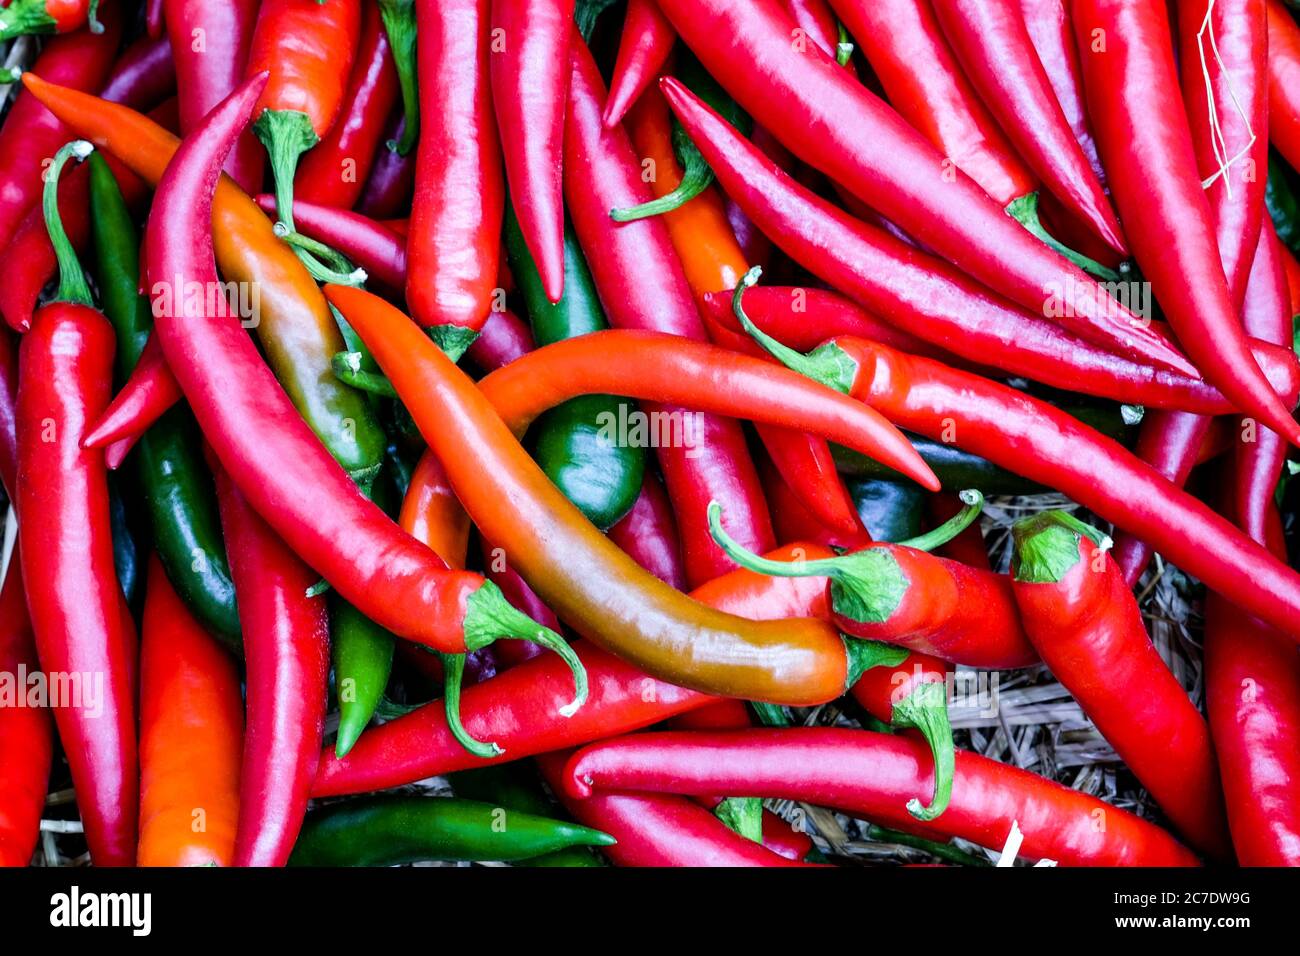 Frische rote Chili-Gruppe auf der Draufsicht, Gemüse zum Kochen, die einen würzigen Geschmack geben, rote Chili-Pfeffer Textur Hintergrund Stockfoto